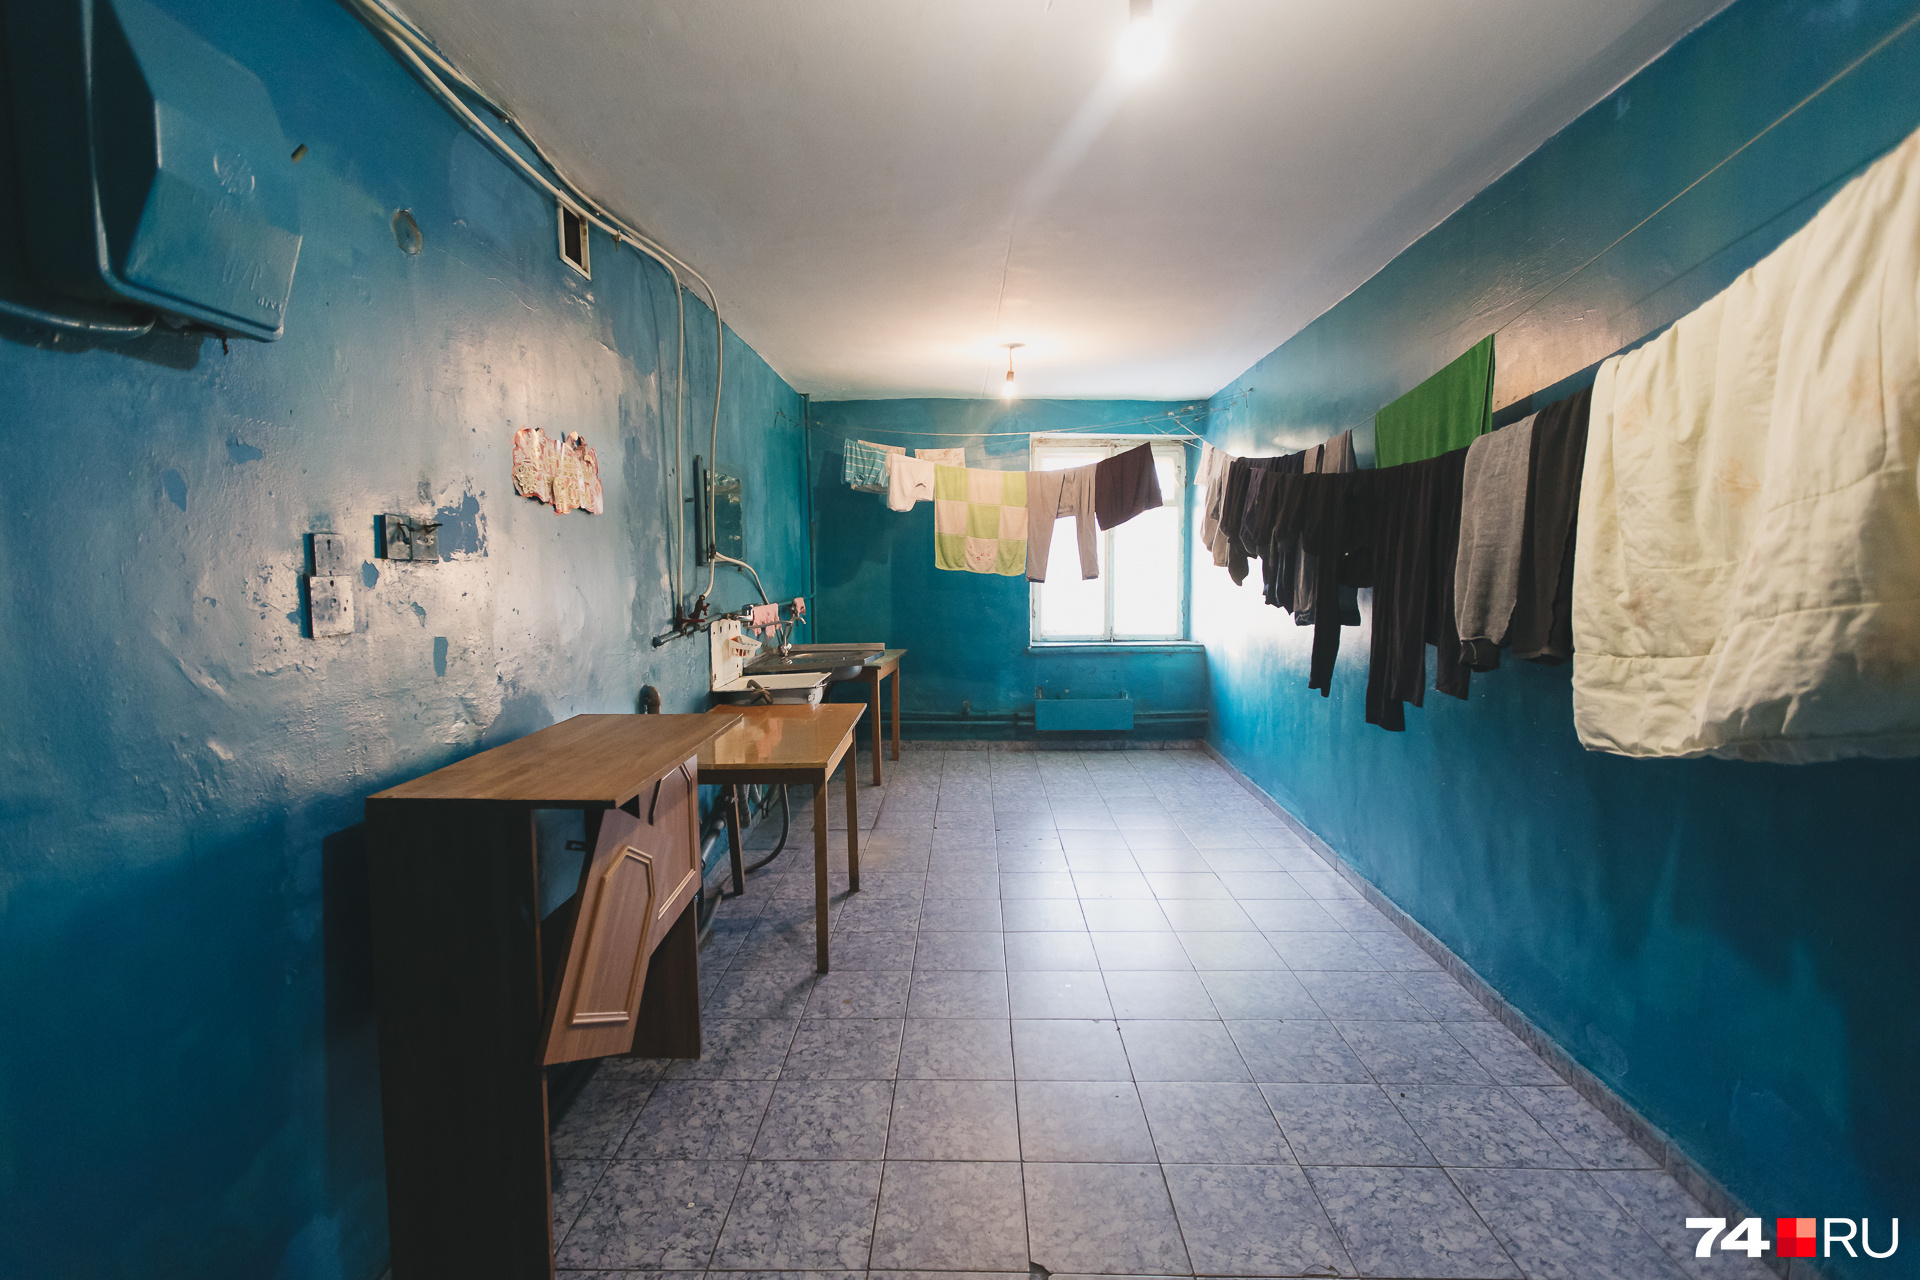 В общежитии кухни, души и туалеты — общие